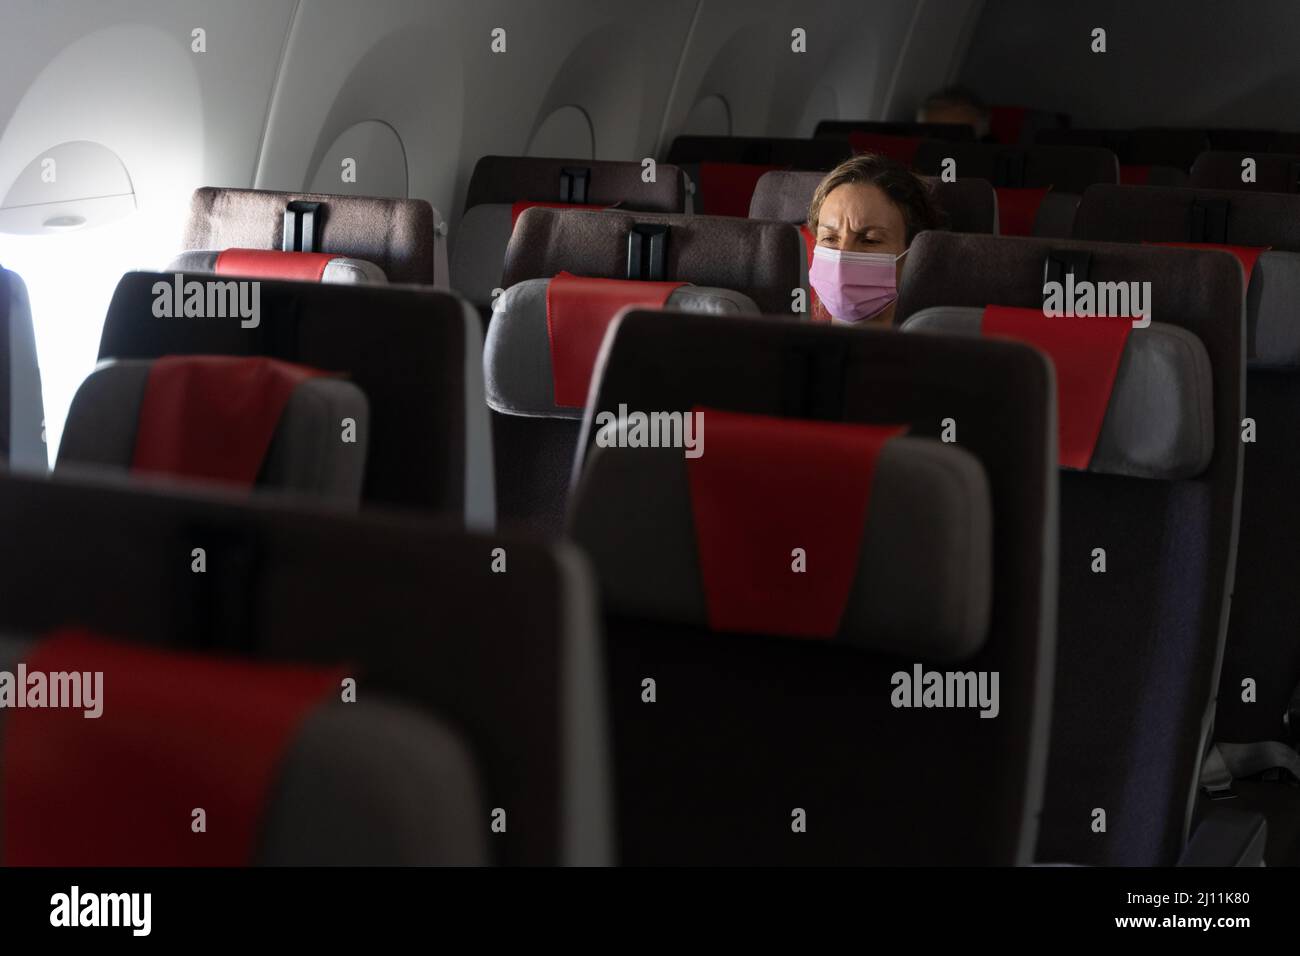 Frau mit rosa Gesichtsmaske sitzt auf Flugzeug-Reihensitz. Einsame Passagierin im Flugzeug, die in der Pandemiesaison unterwegs ist Stockfoto